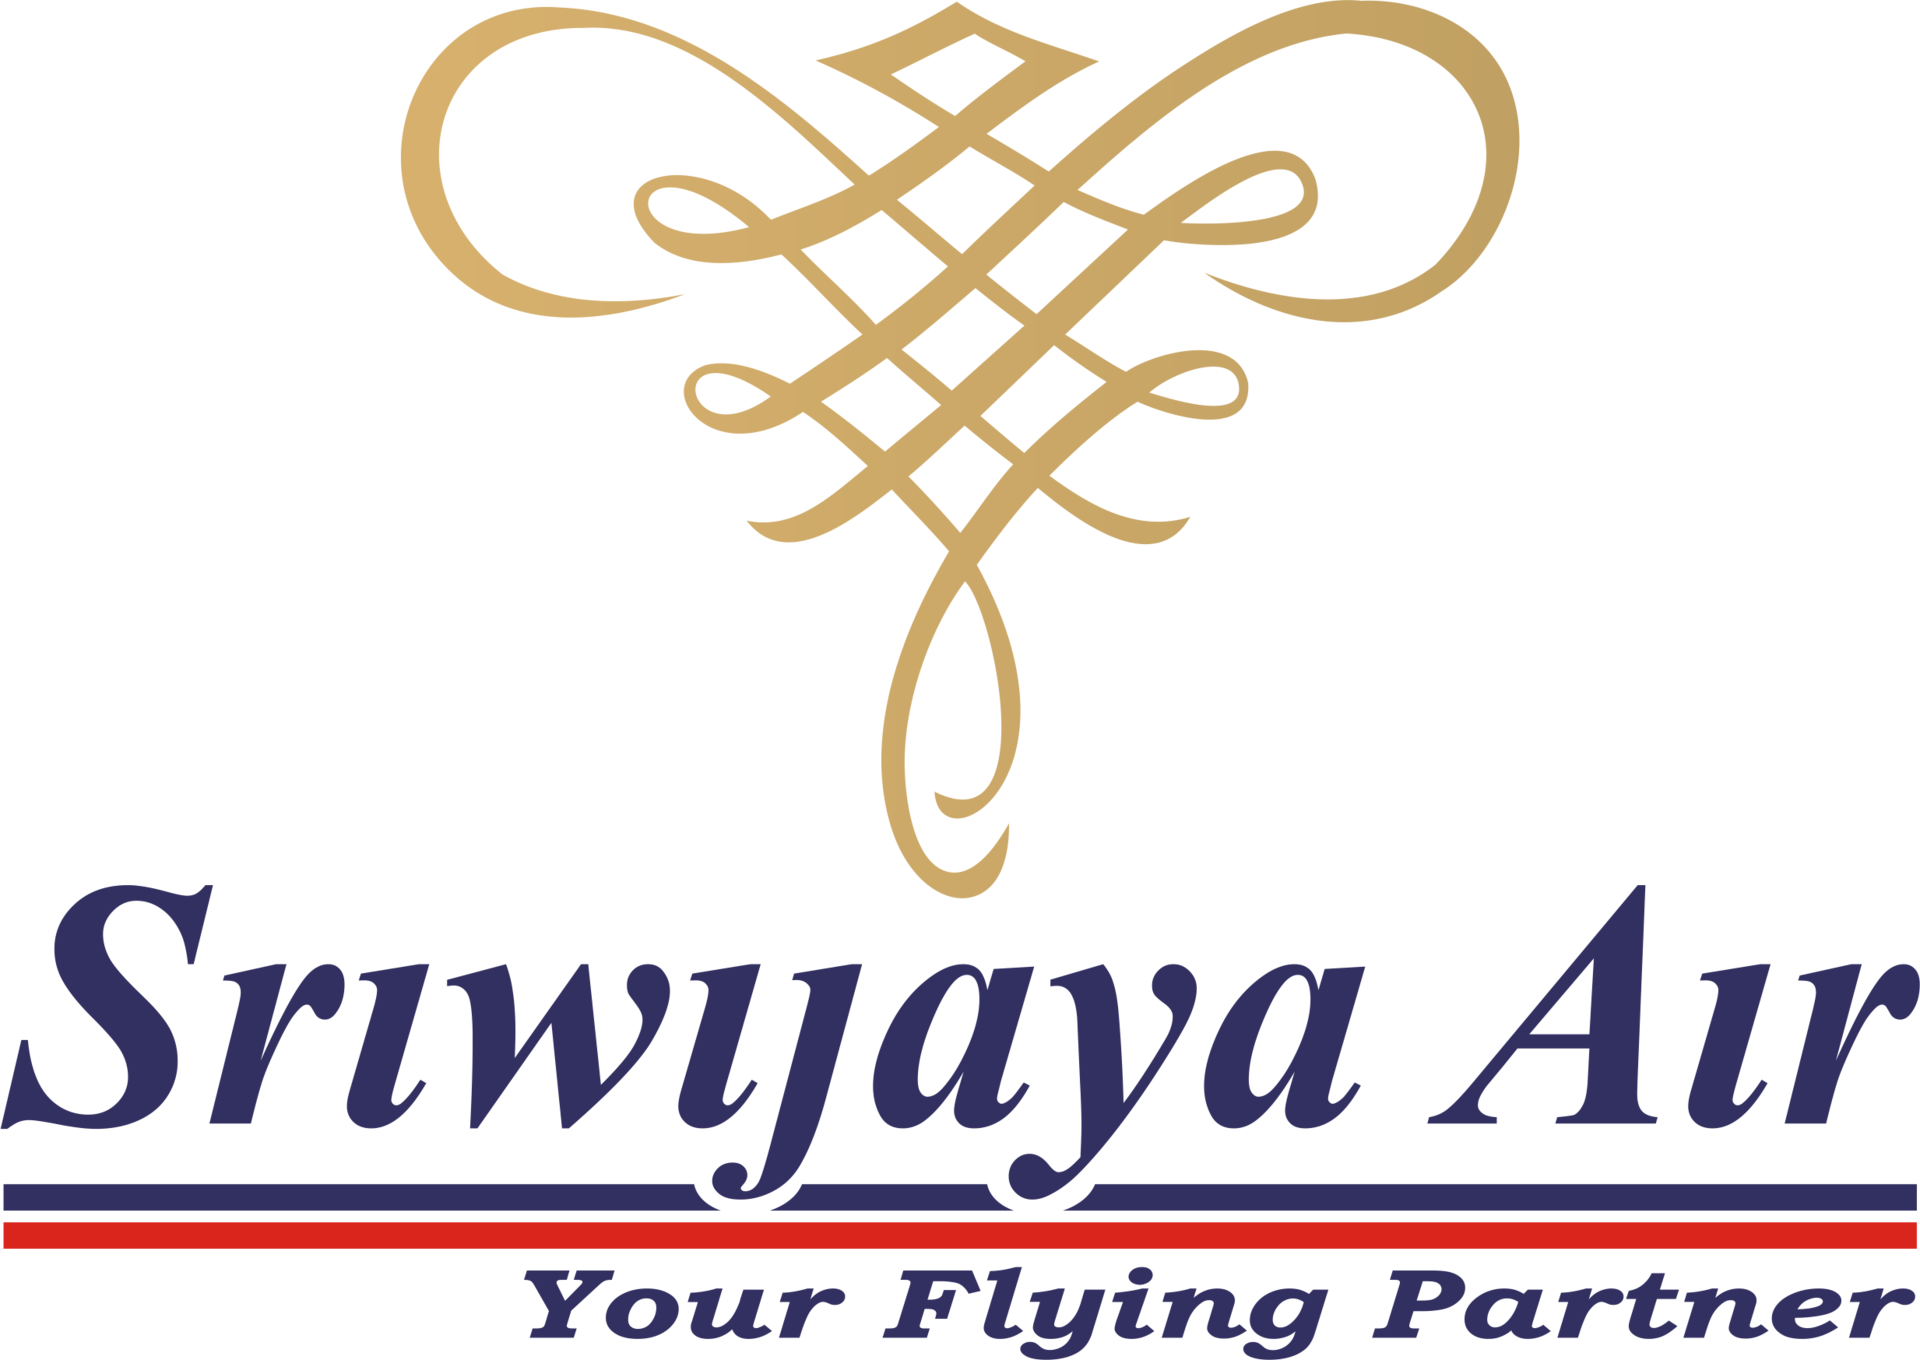 Sriwijaya Air : un Boeing 737-500 disparaît après son décollage de Jakarta (Indonésie)